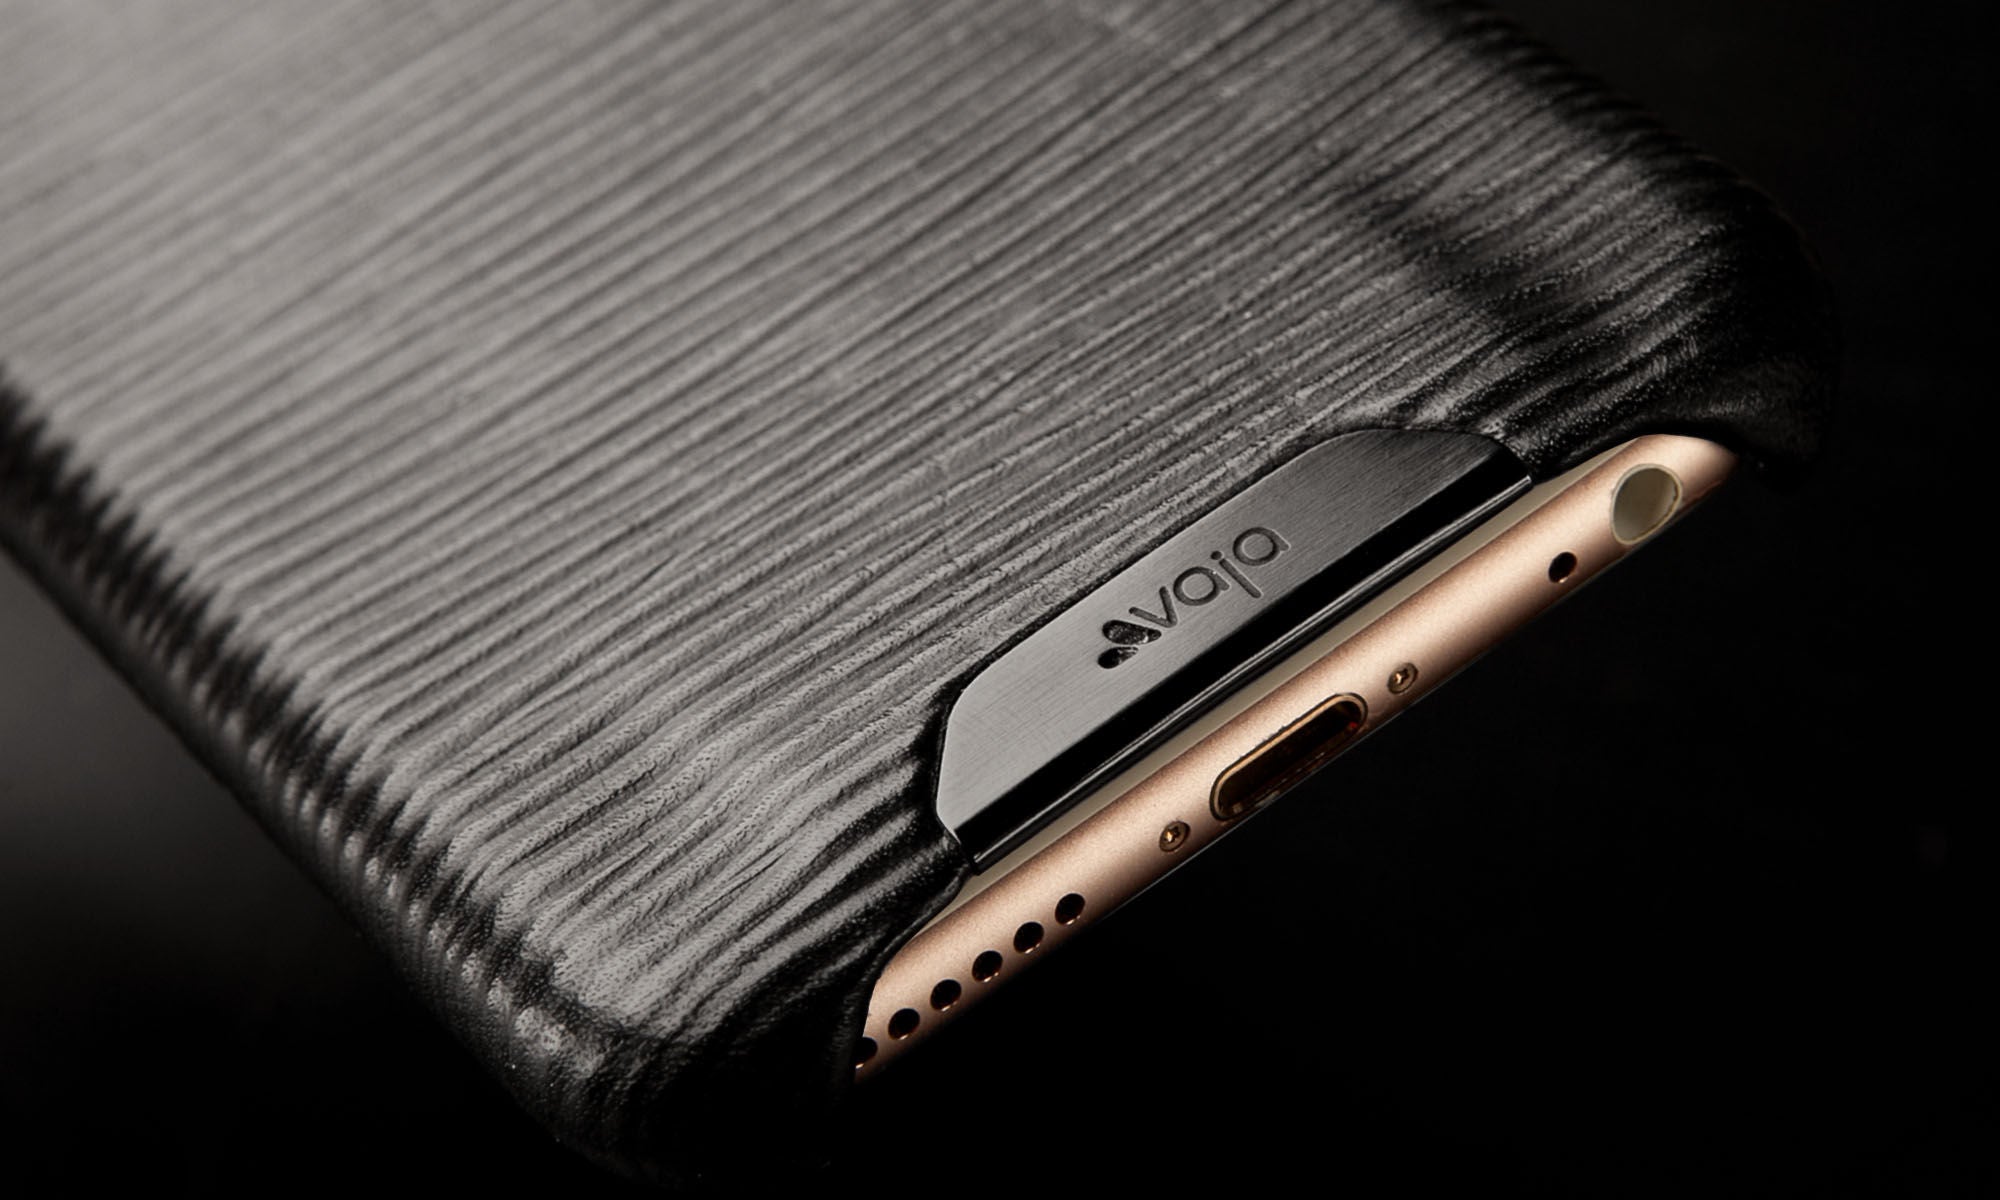 iPhone 6/6s Grip Legno Nero Premium Leather Case